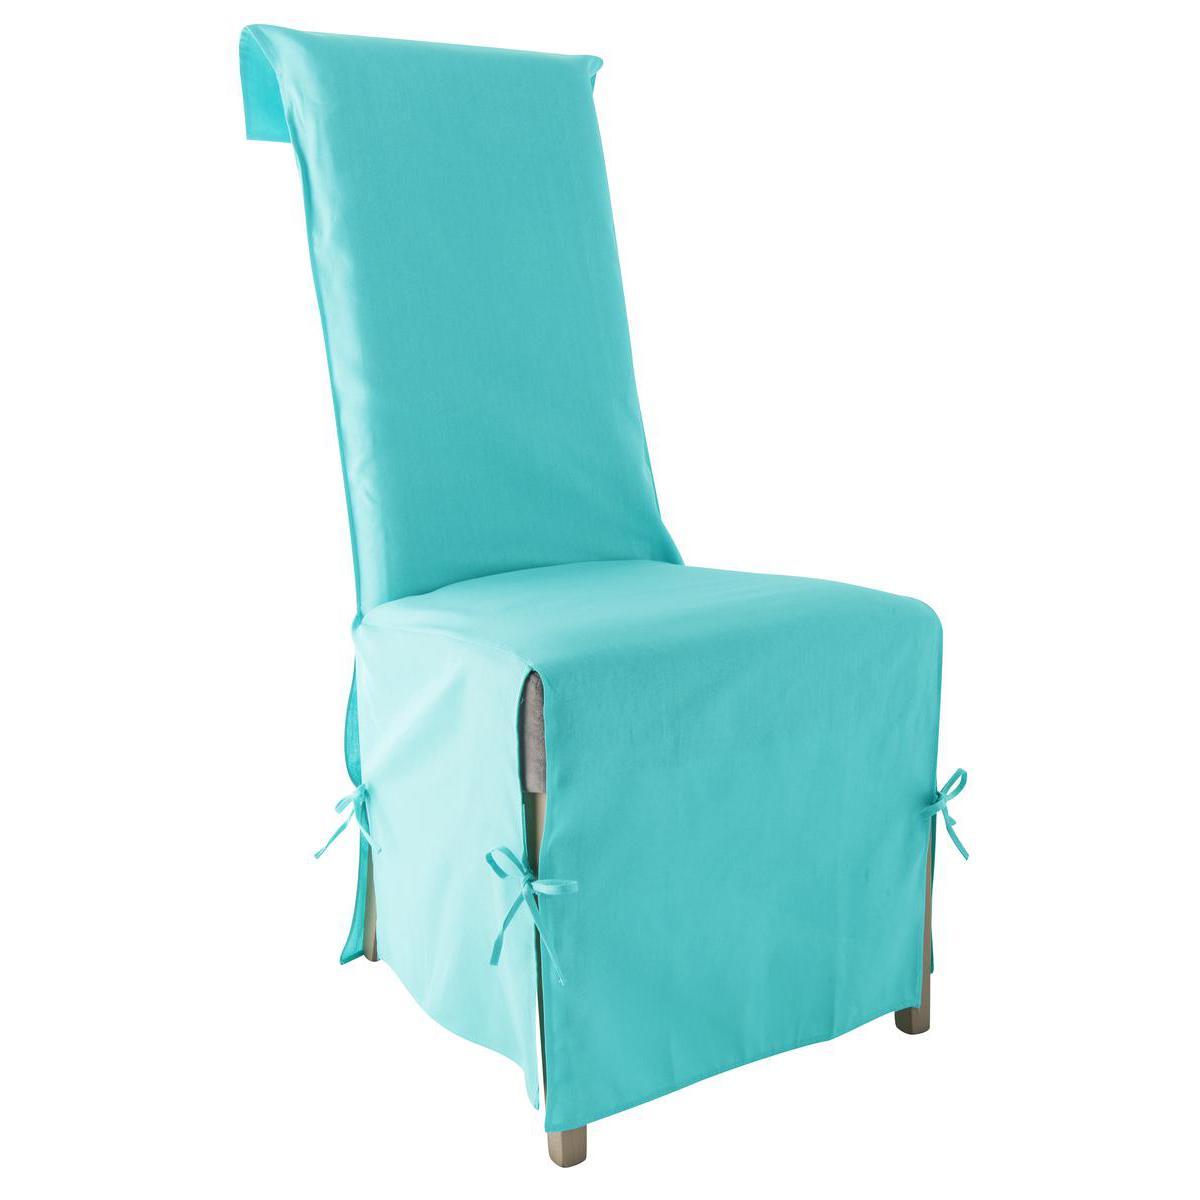 Housse de chaise panama - 40 x 40 x 72 cm - 100% coton - Bleu turquoise